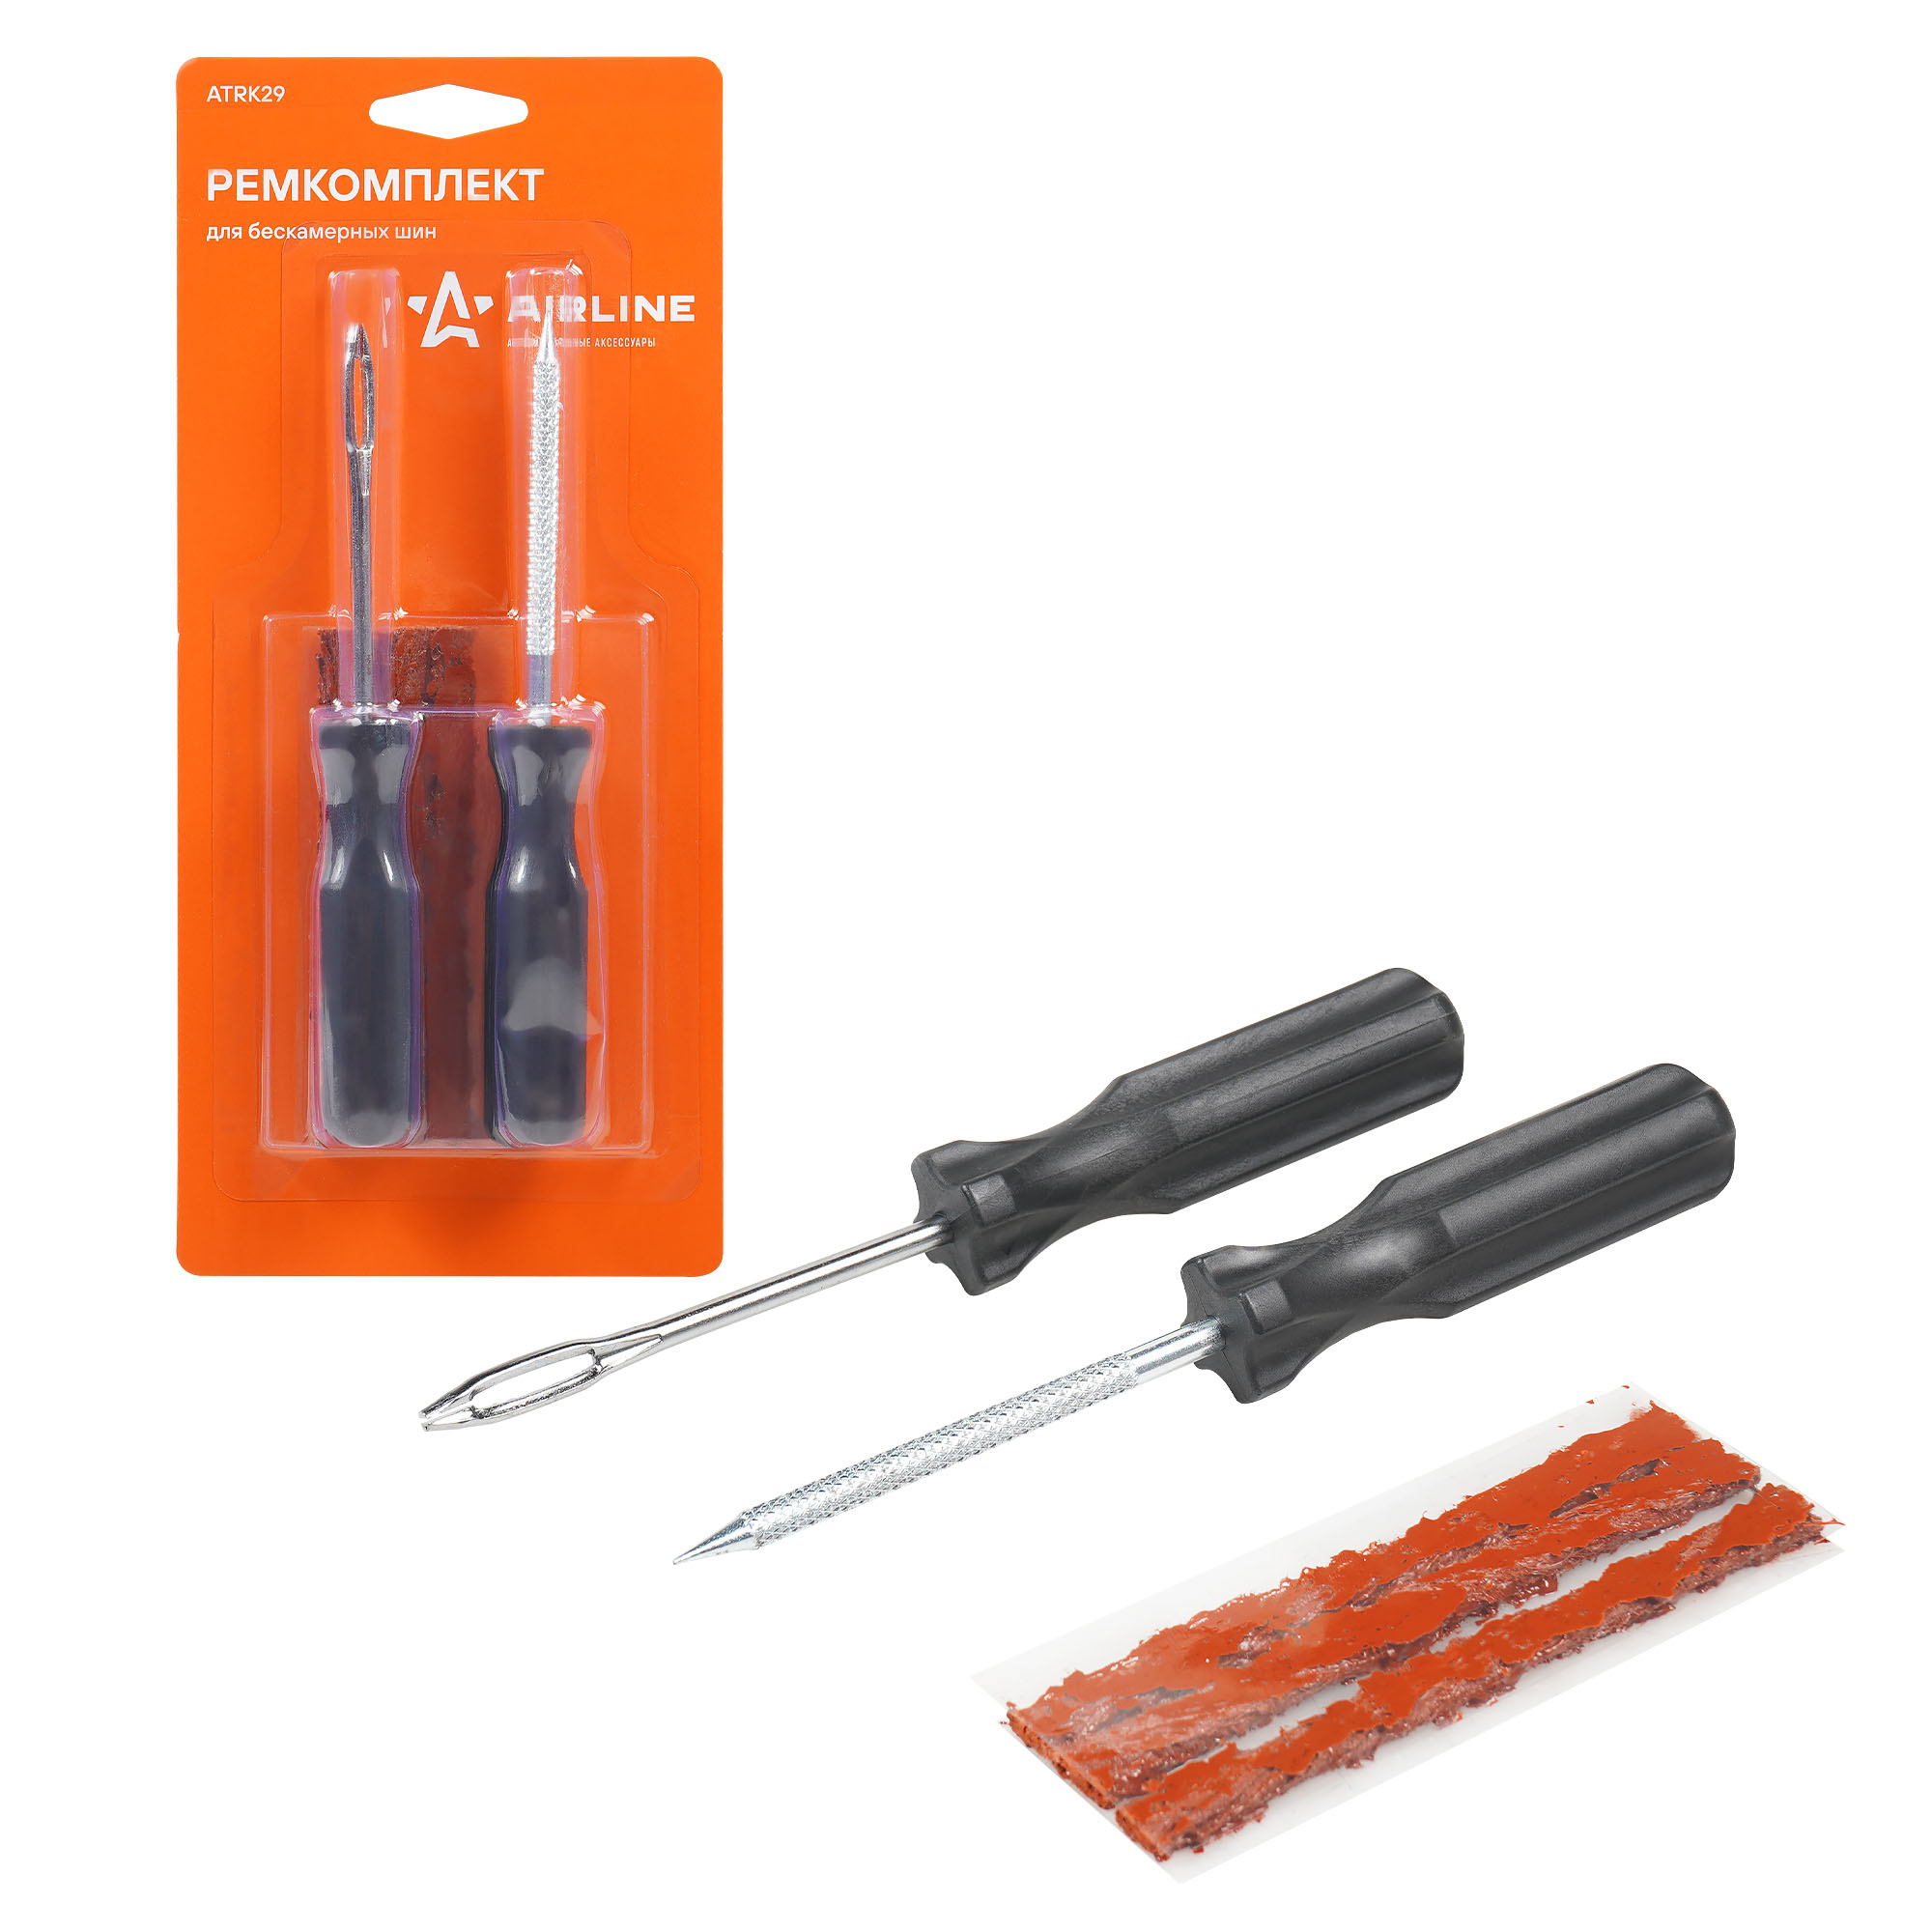 Ремкомплект для б/к шин прямые ручки (шило для жгута шило-напильник 3 жгута) (ATRK29)